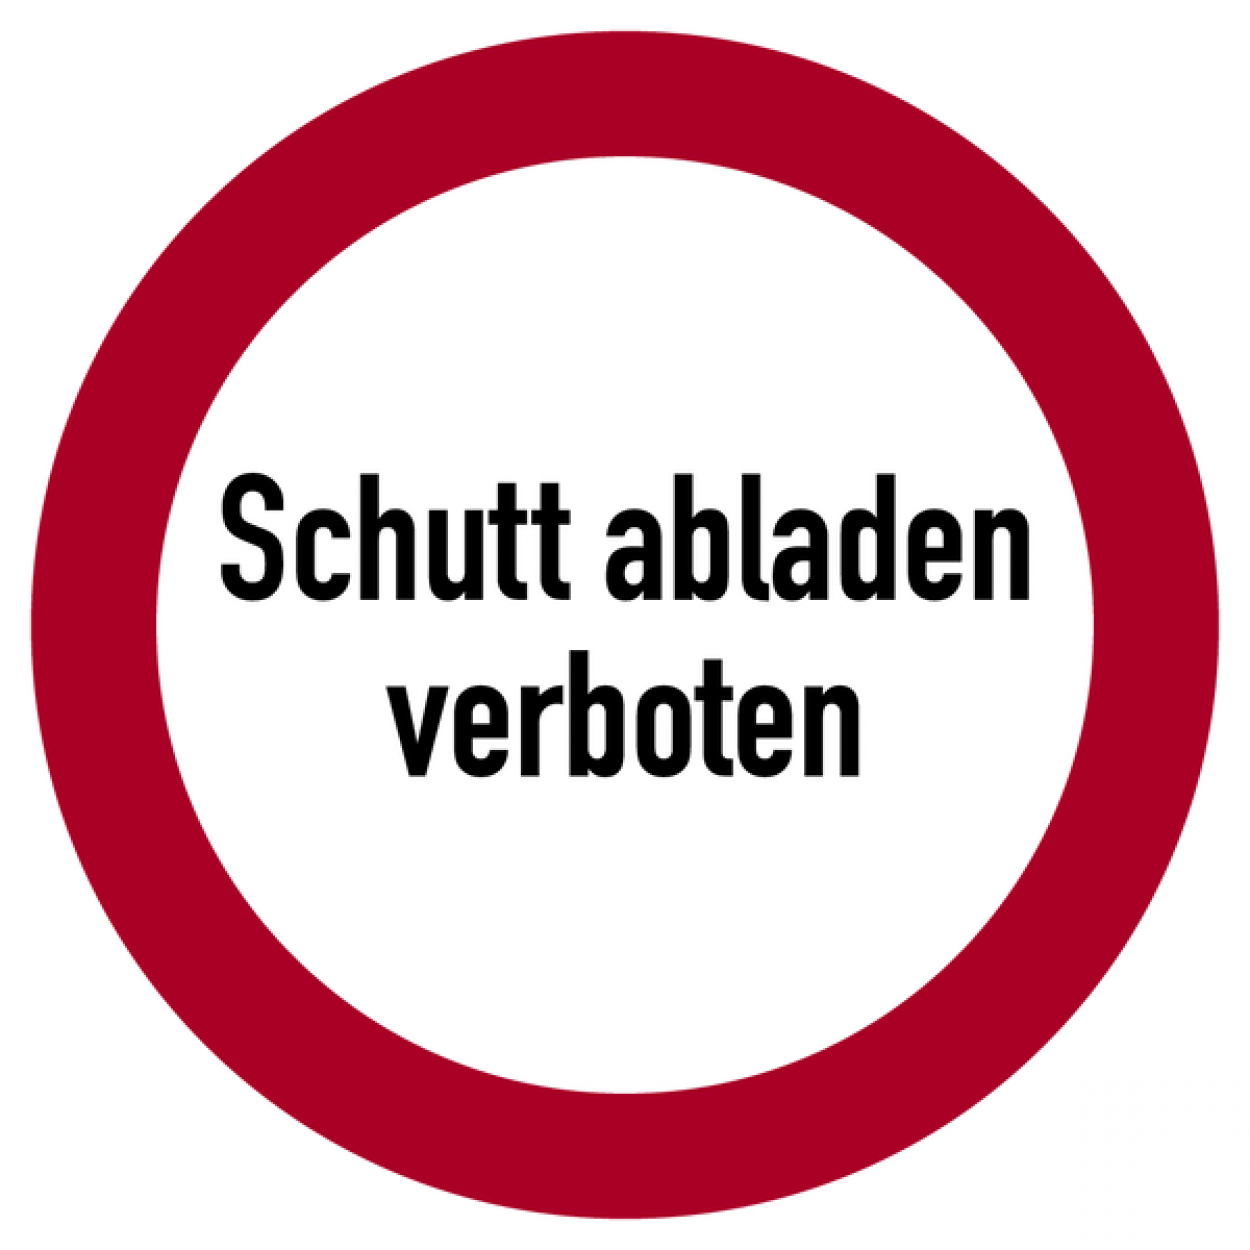 Aufkleber Verbotszeichen Schild "Schutt abladen verboten" Folie Ø5-30cm rot